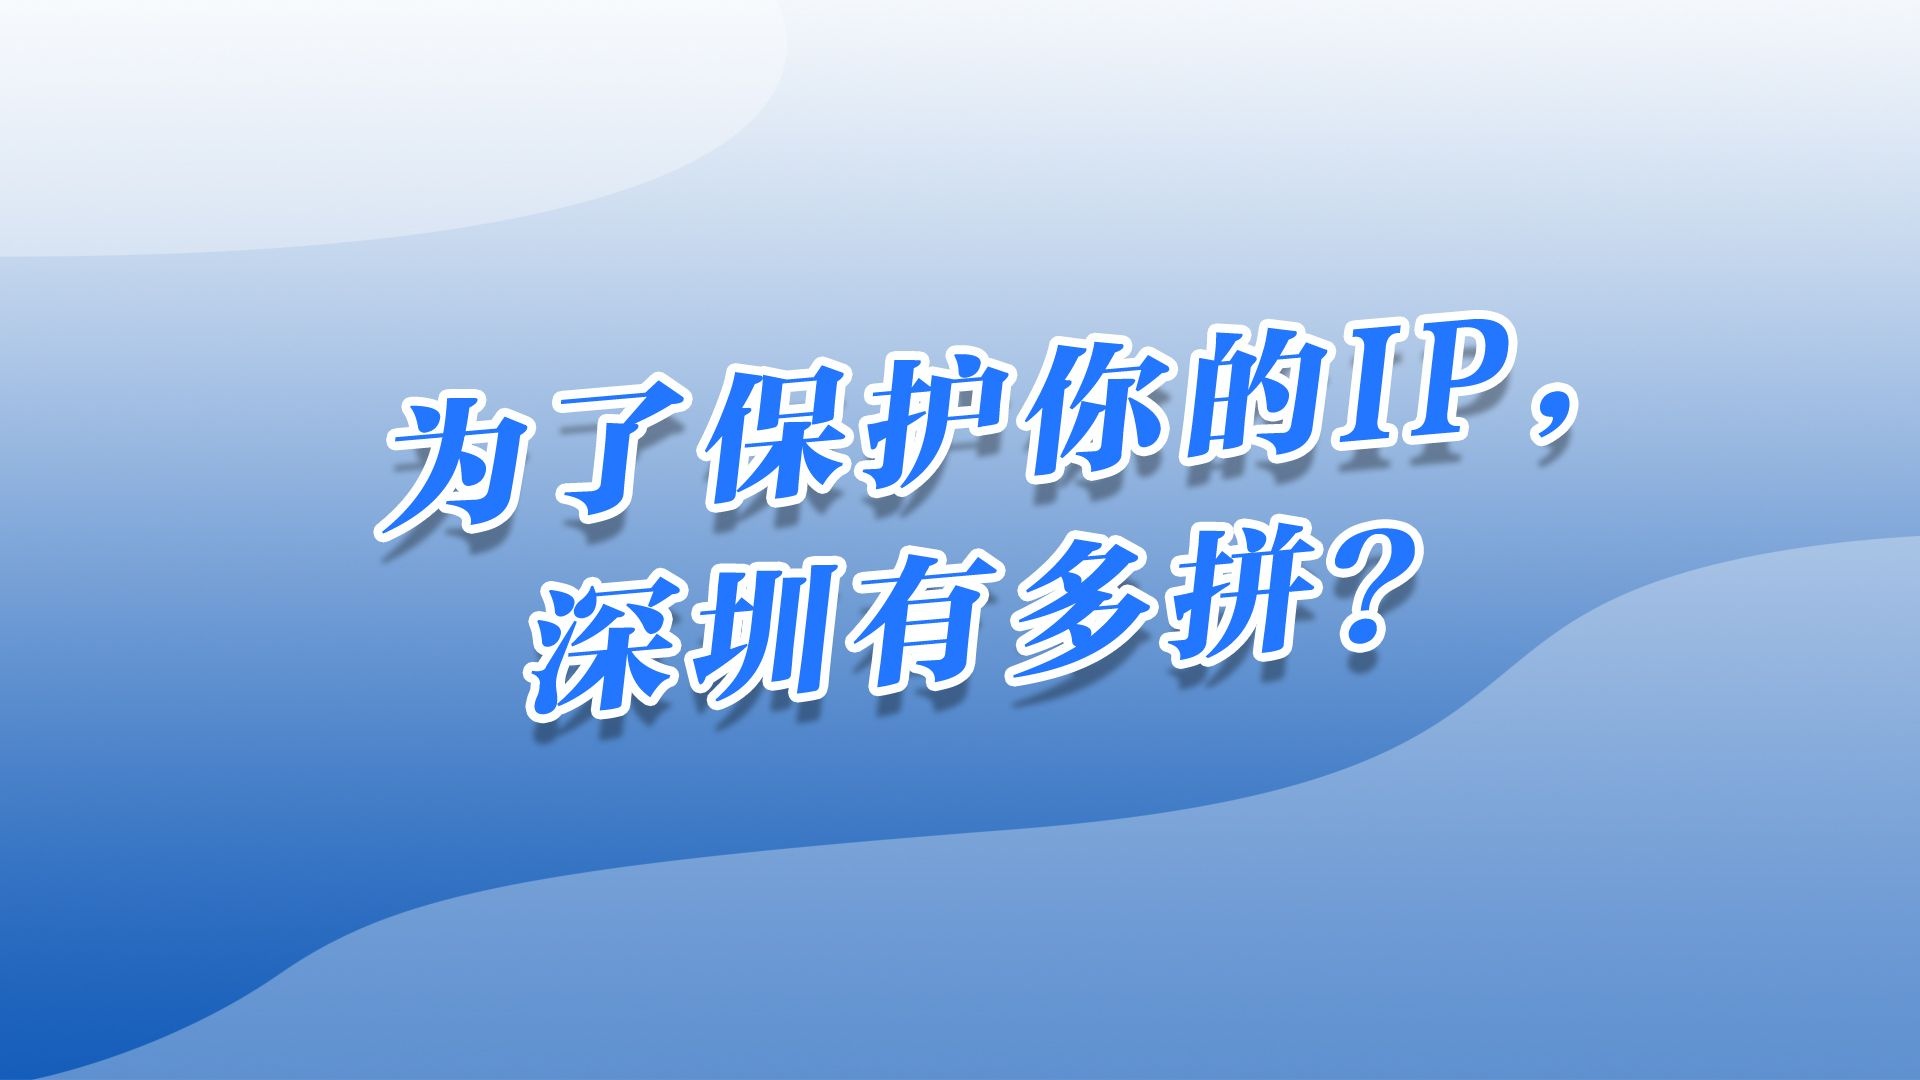 为了保护你的IP，深圳有多拼？ 